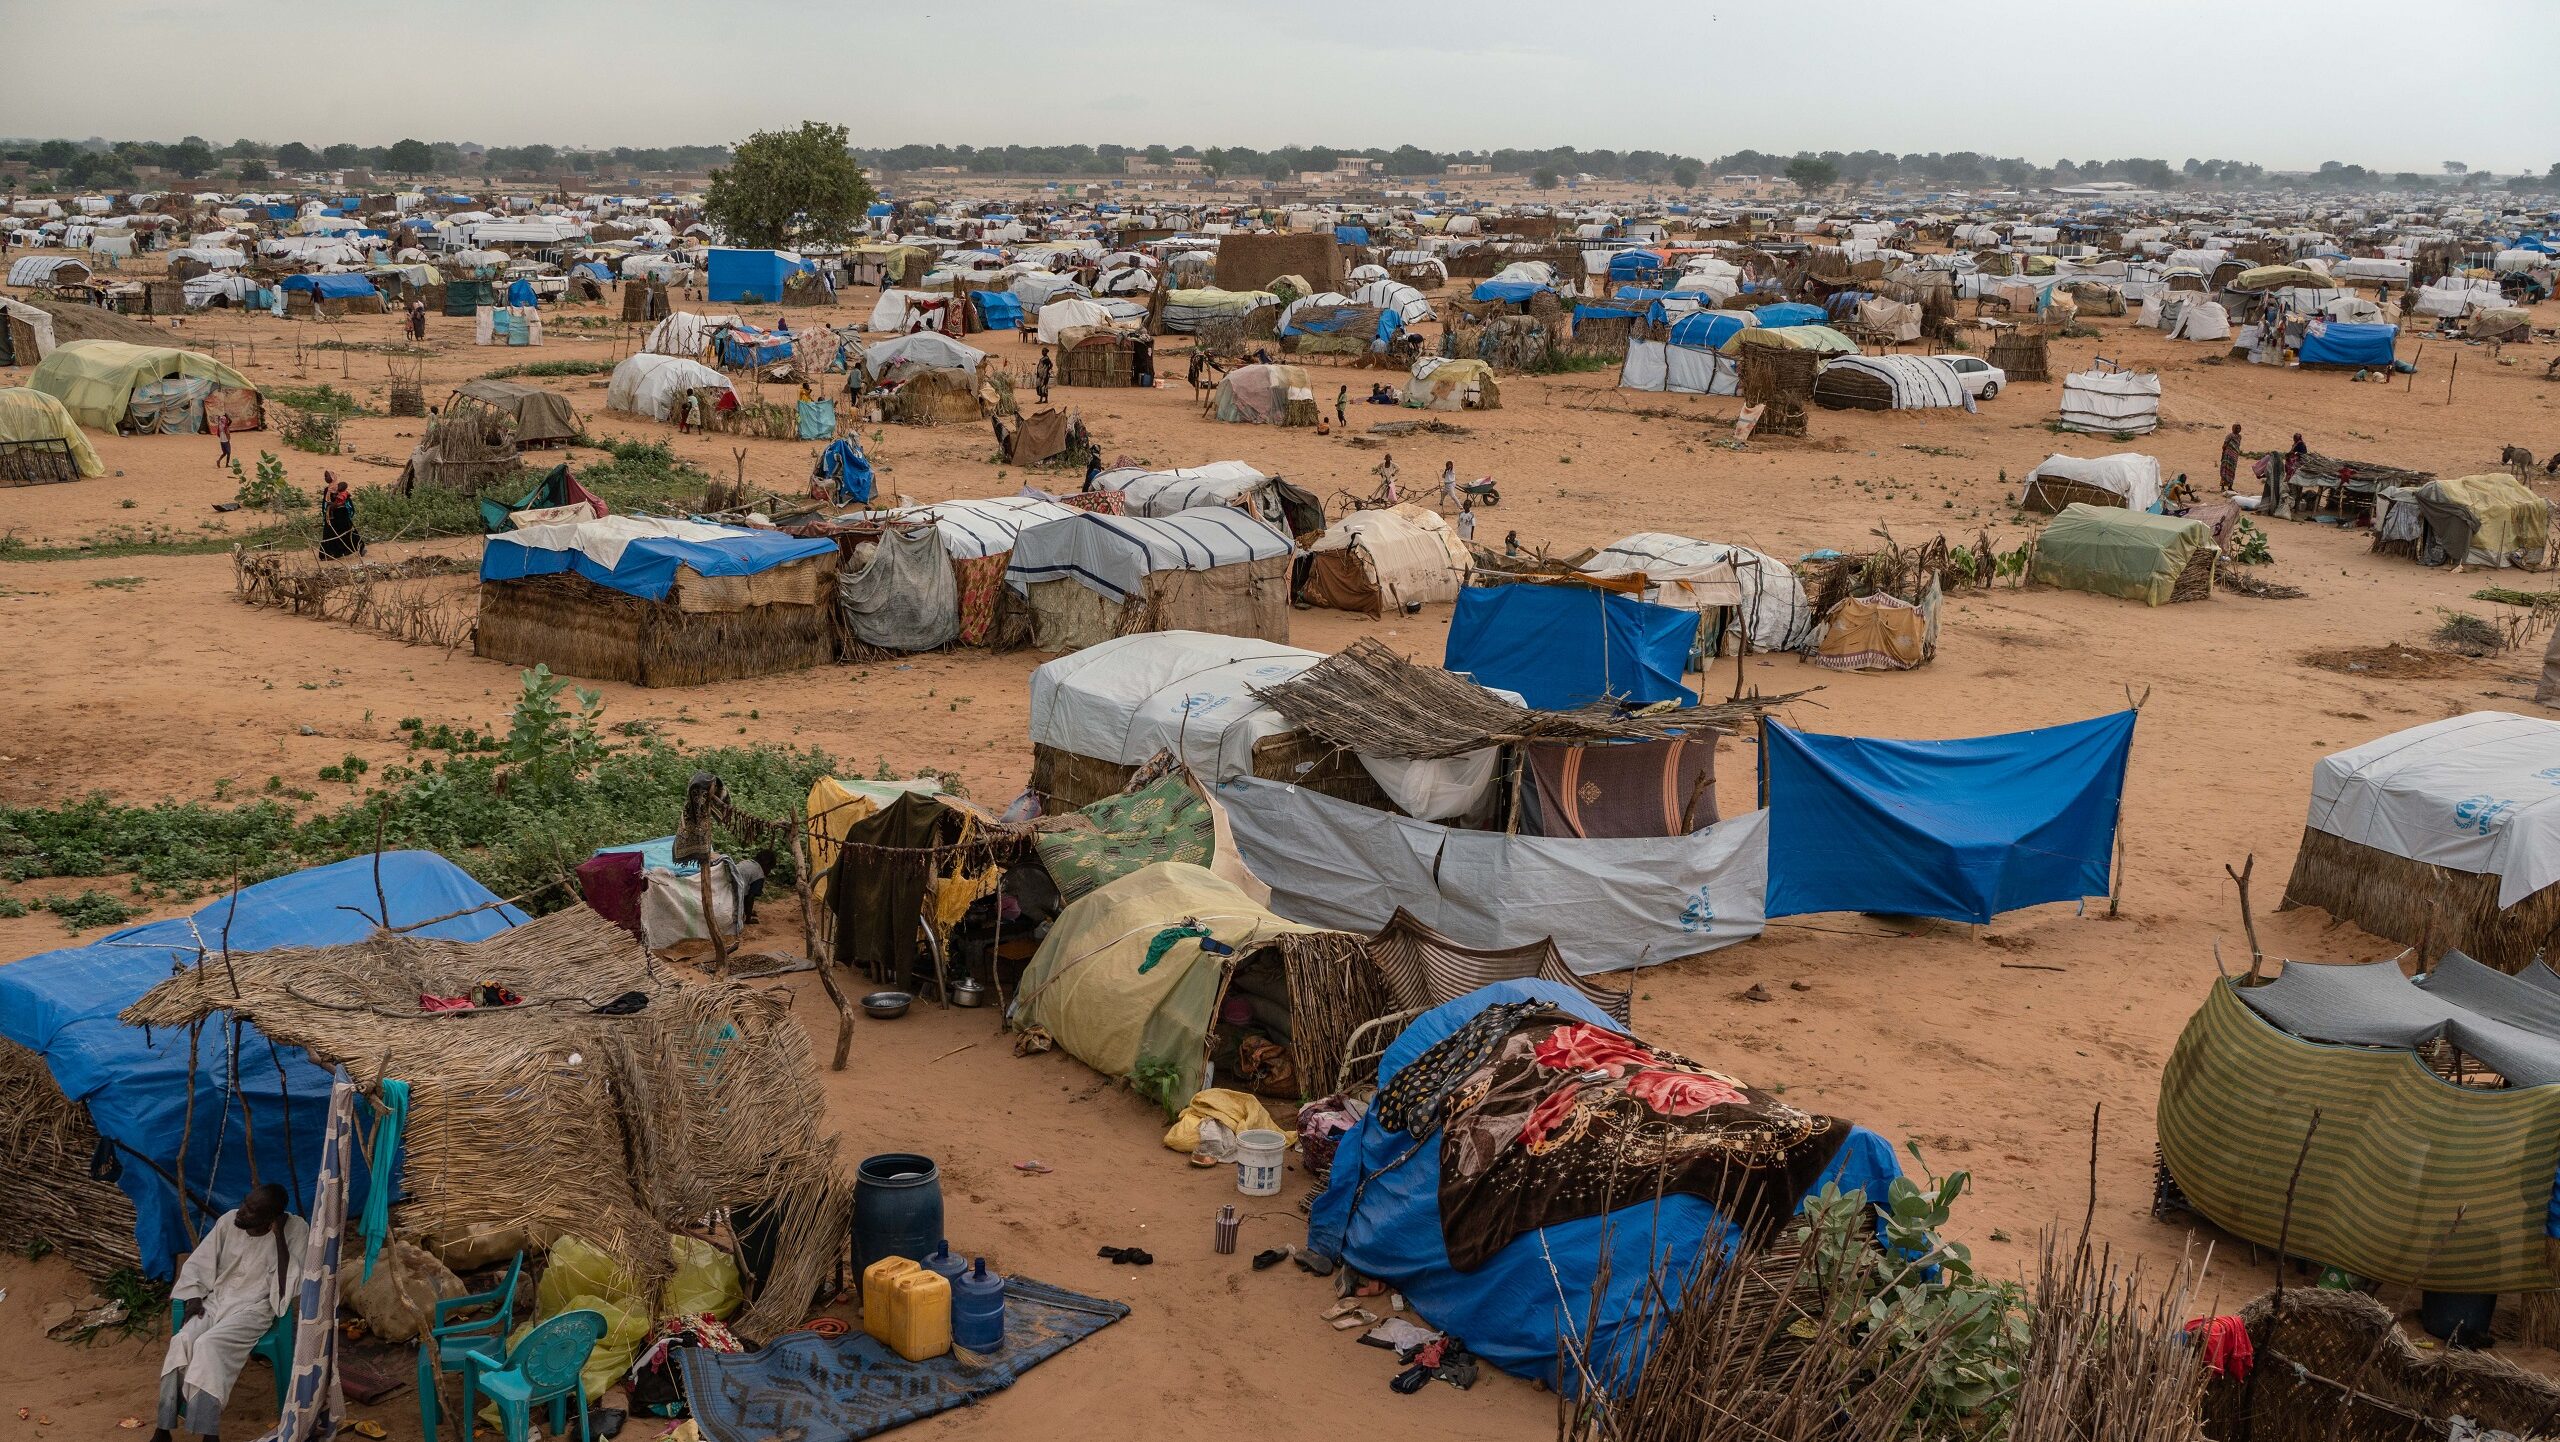 UN Official Describes Sudan Conflict as ‘Humanitarian Nightmare’